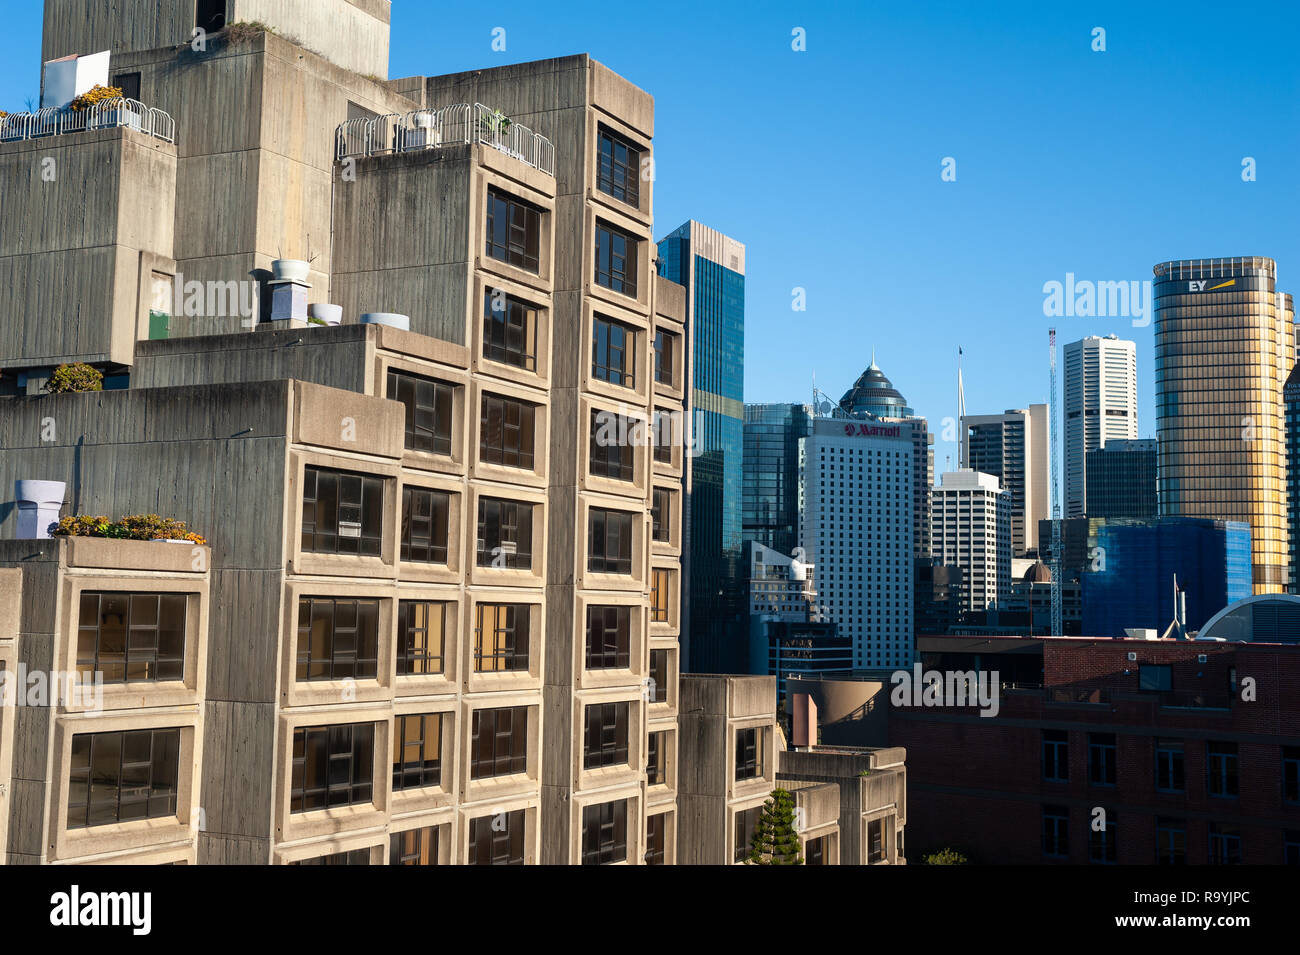 16.09.2018, Sydney, New South Wales, Australien - Ein Blick auf das bekannte Sirius-Gebaeude, einem sozialen Wohnungsbauprojekt aus den Siebzigerjahre Stockfoto